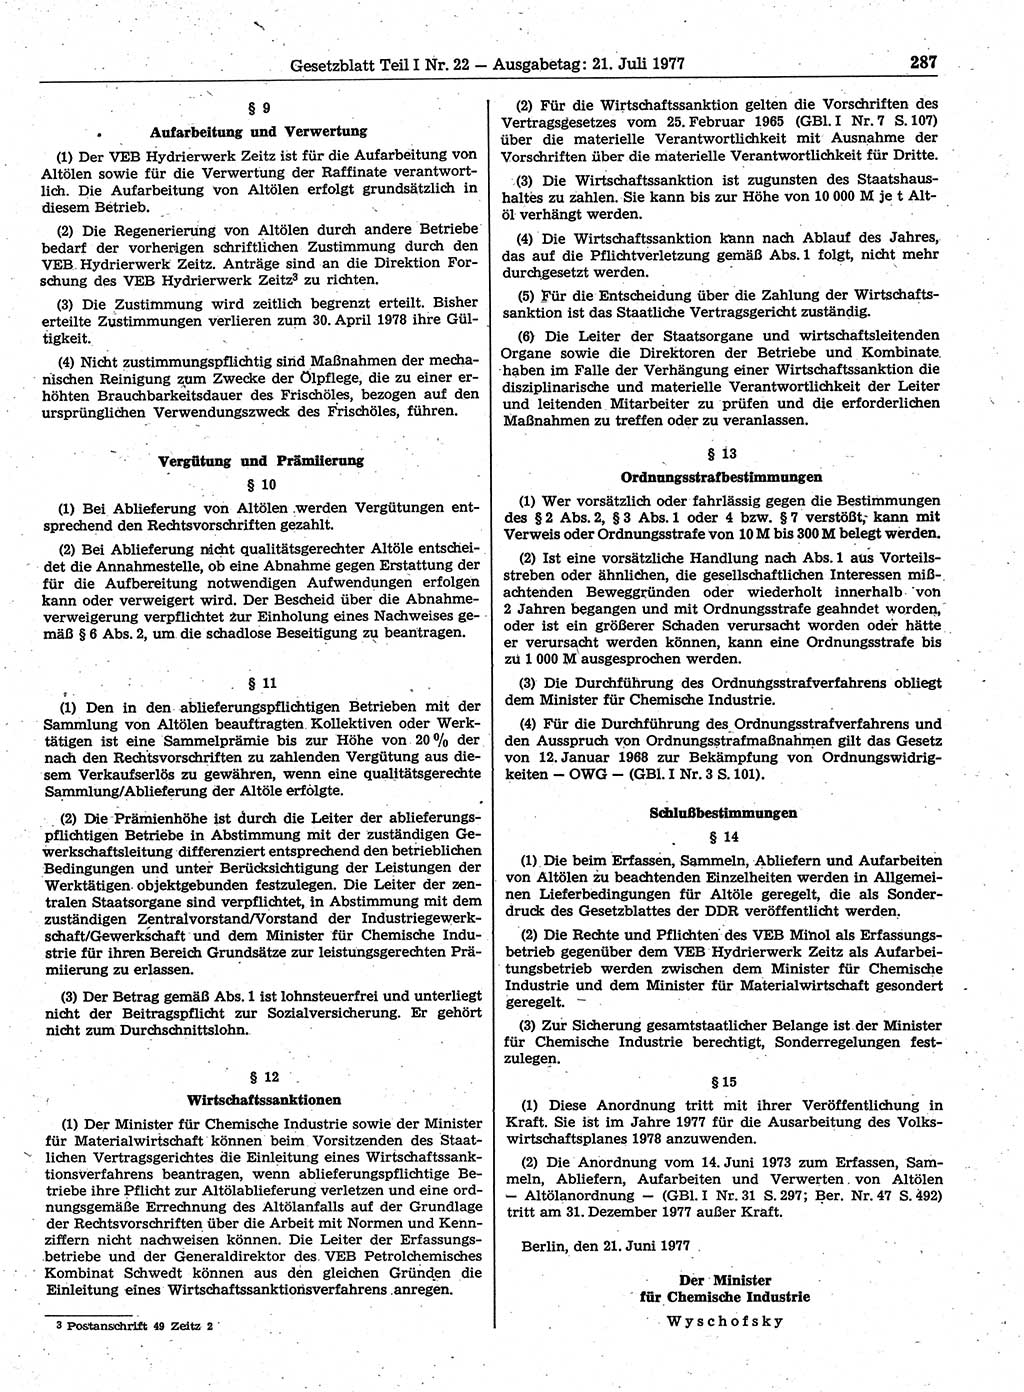 Gesetzblatt (GBl.) der Deutschen Demokratischen Republik (DDR) Teil Ⅰ 1977, Seite 287 (GBl. DDR Ⅰ 1977, S. 287)